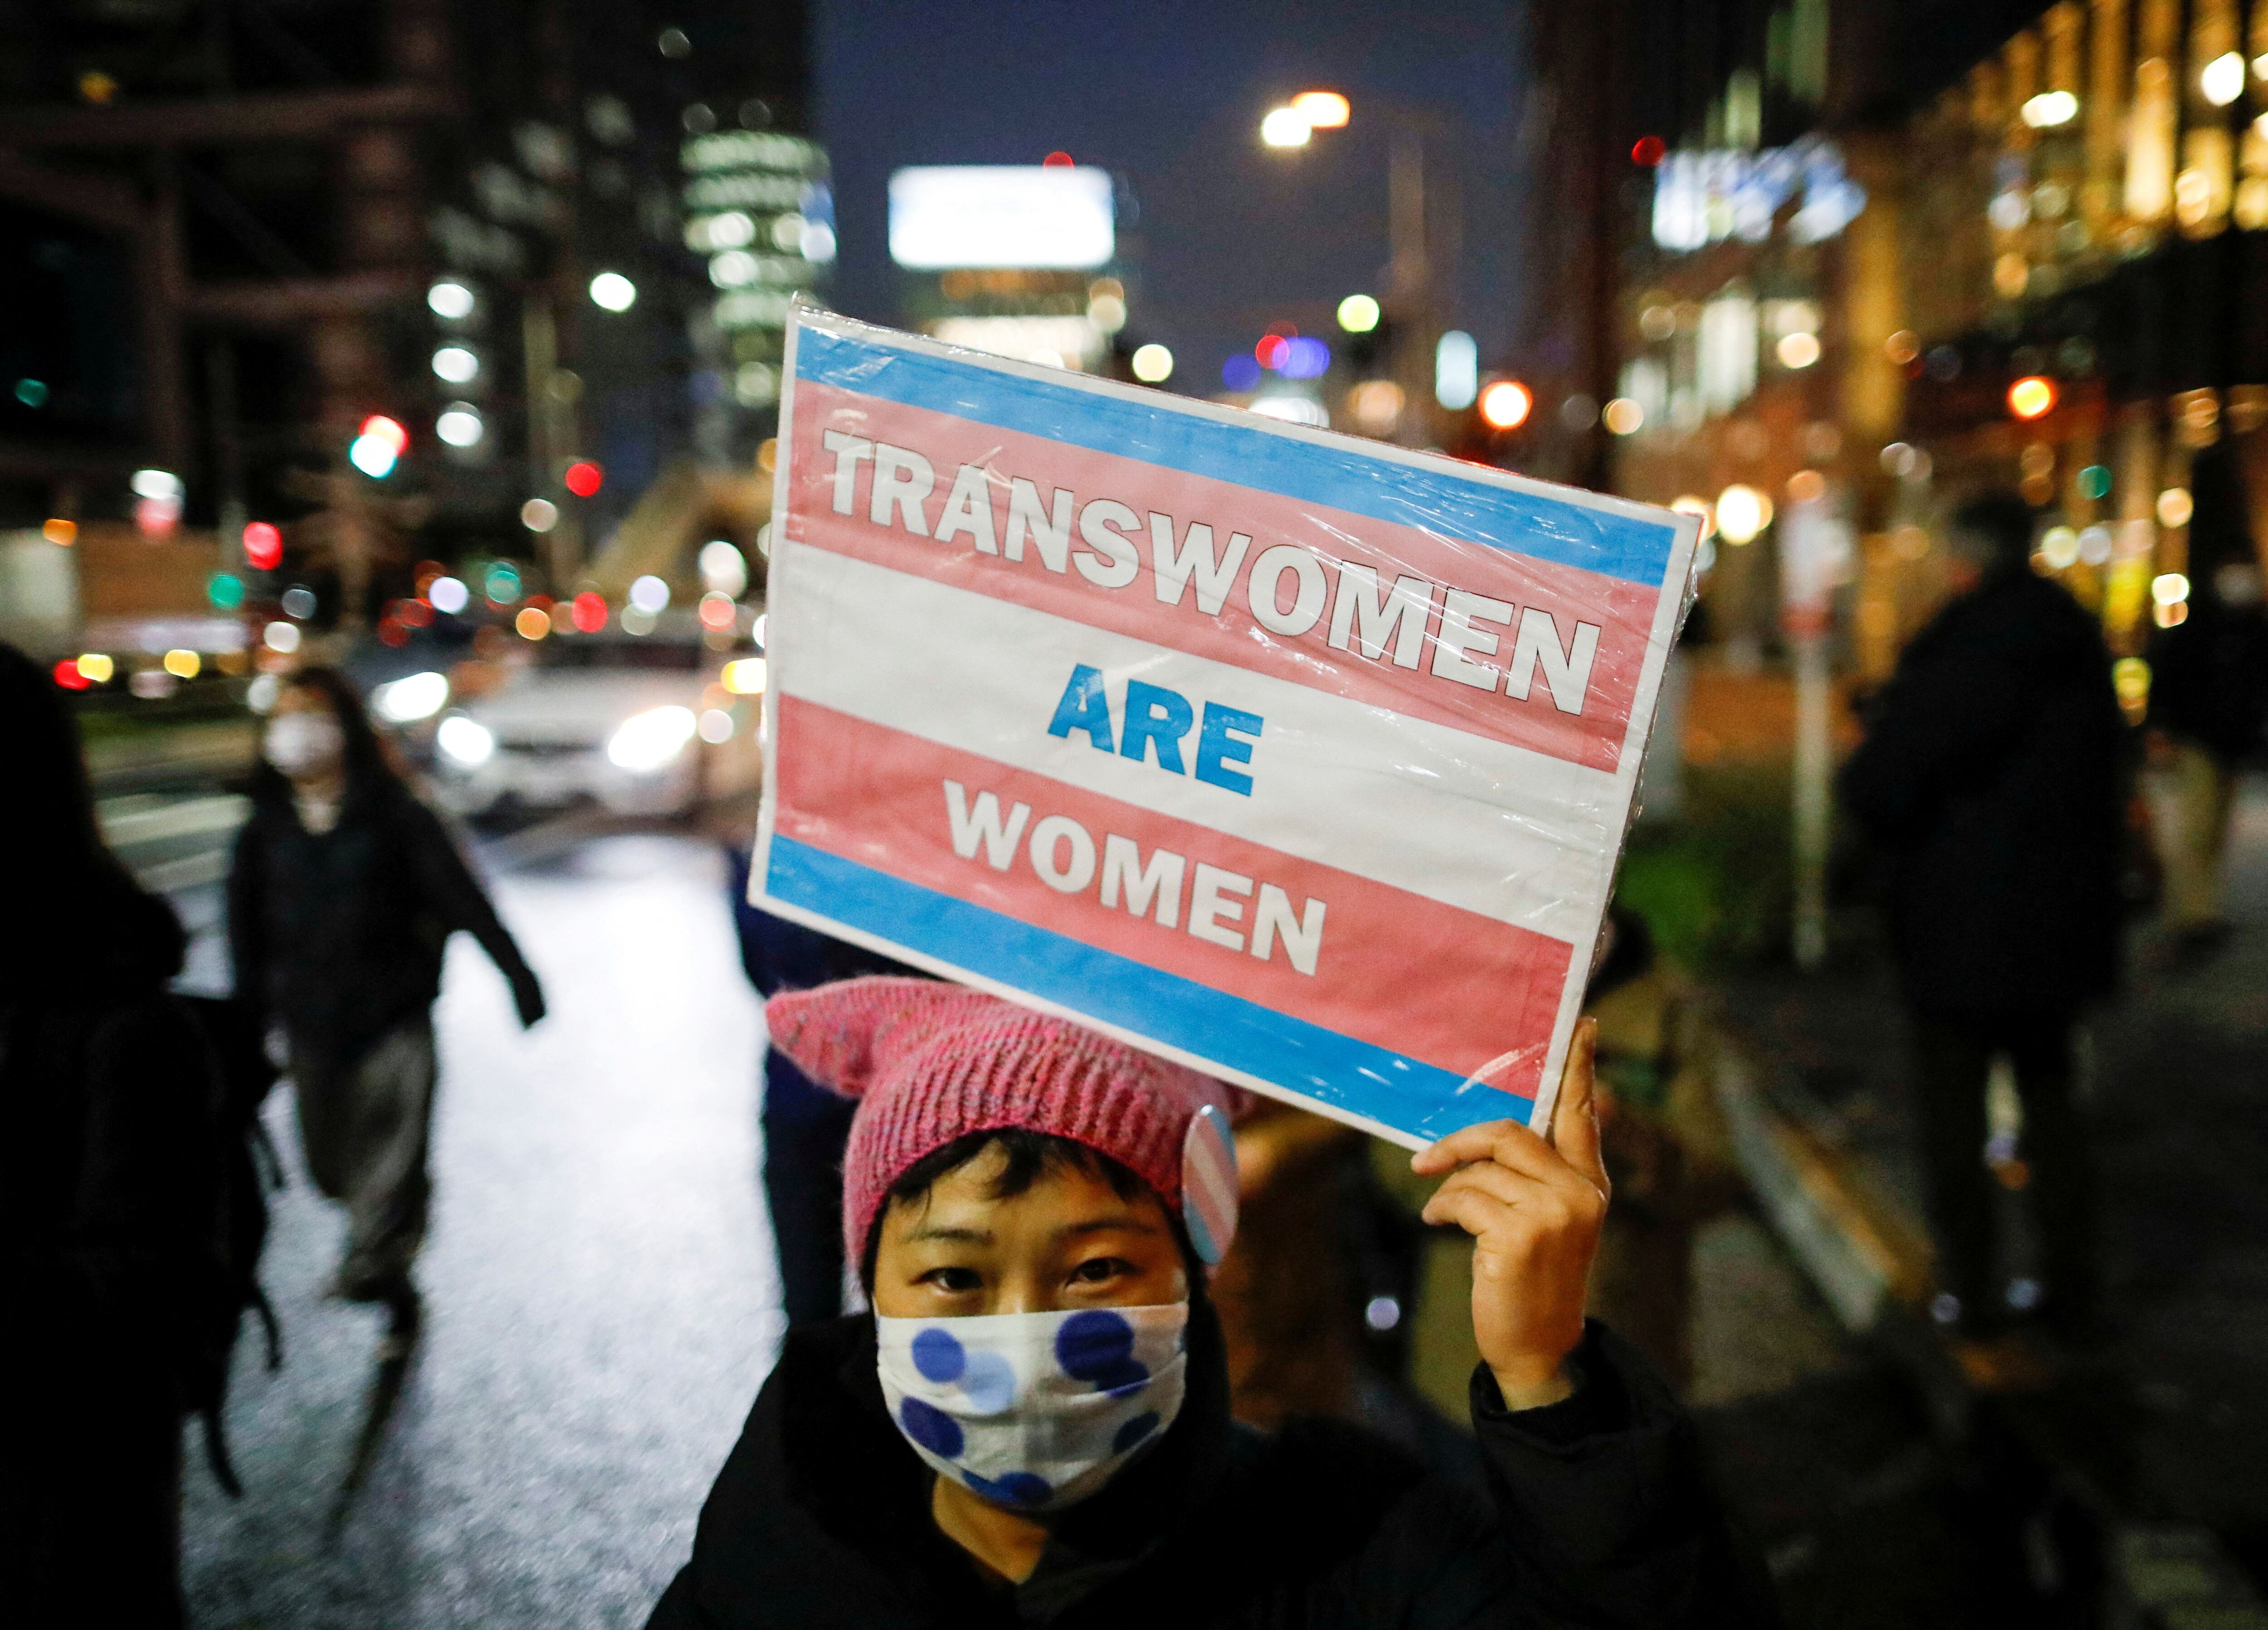 2021년 3월 8일 일본 도쿄에서 열린국제 여성의 날 행사에 한 시민이 '성전환 여성도 여자다'라는 내용의 플래카드를 들고 참석한 모습. /로이터 뉴스1